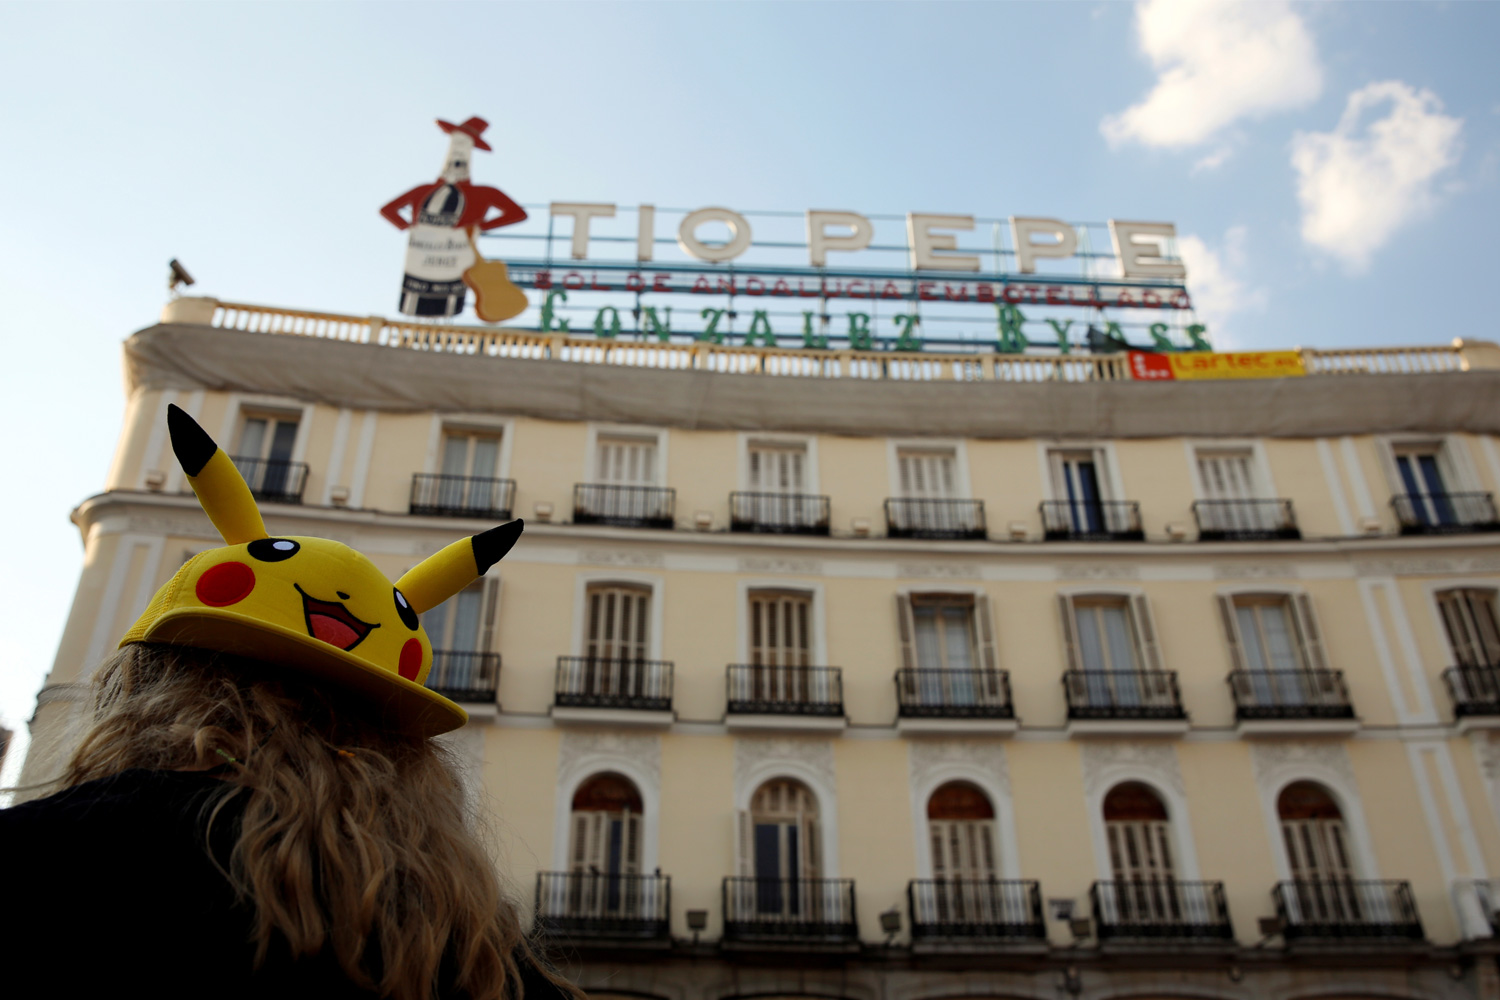 La 'pokequedada' de la Puerta del Sol bate récords mundiales